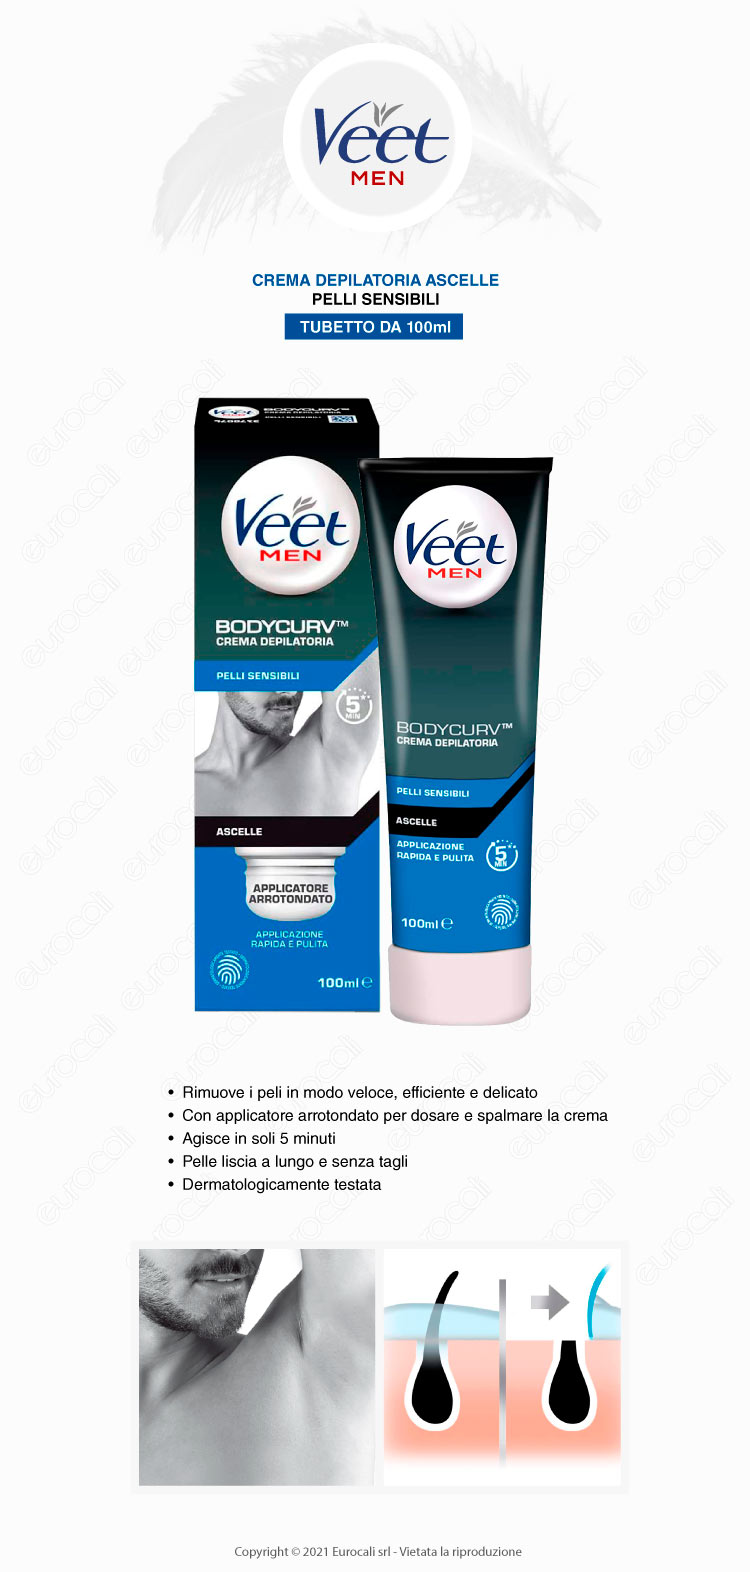 Veet for men Crema Depilatoria Ascelle pelli sensibili